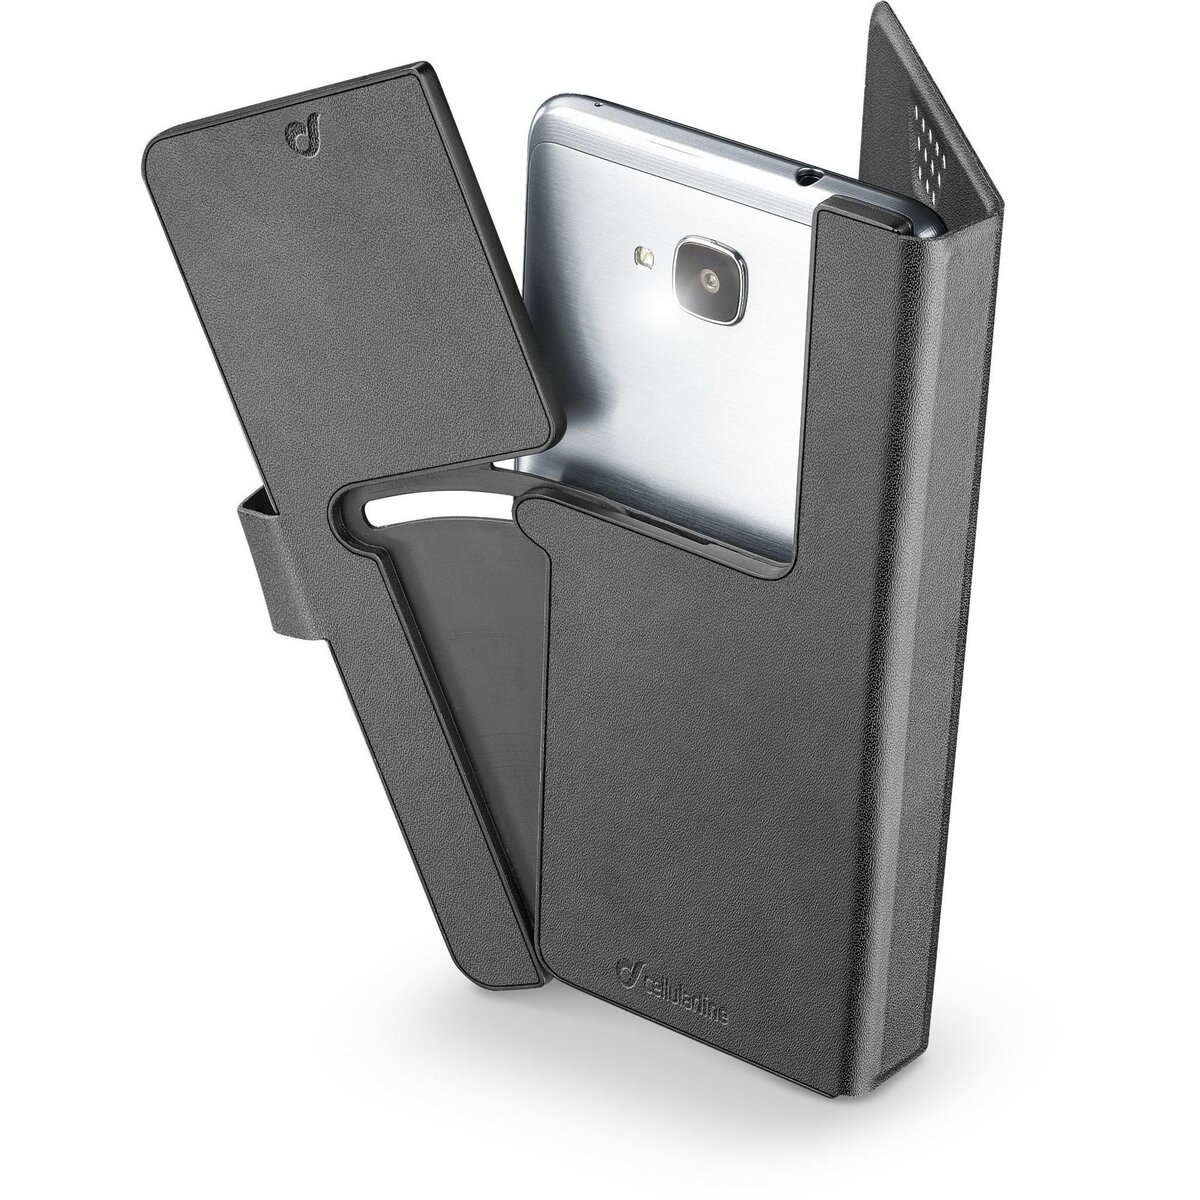 CELLULAR Etui folio porte cartes pour Smartphone jusqu'à 5.4 pouces - Noir